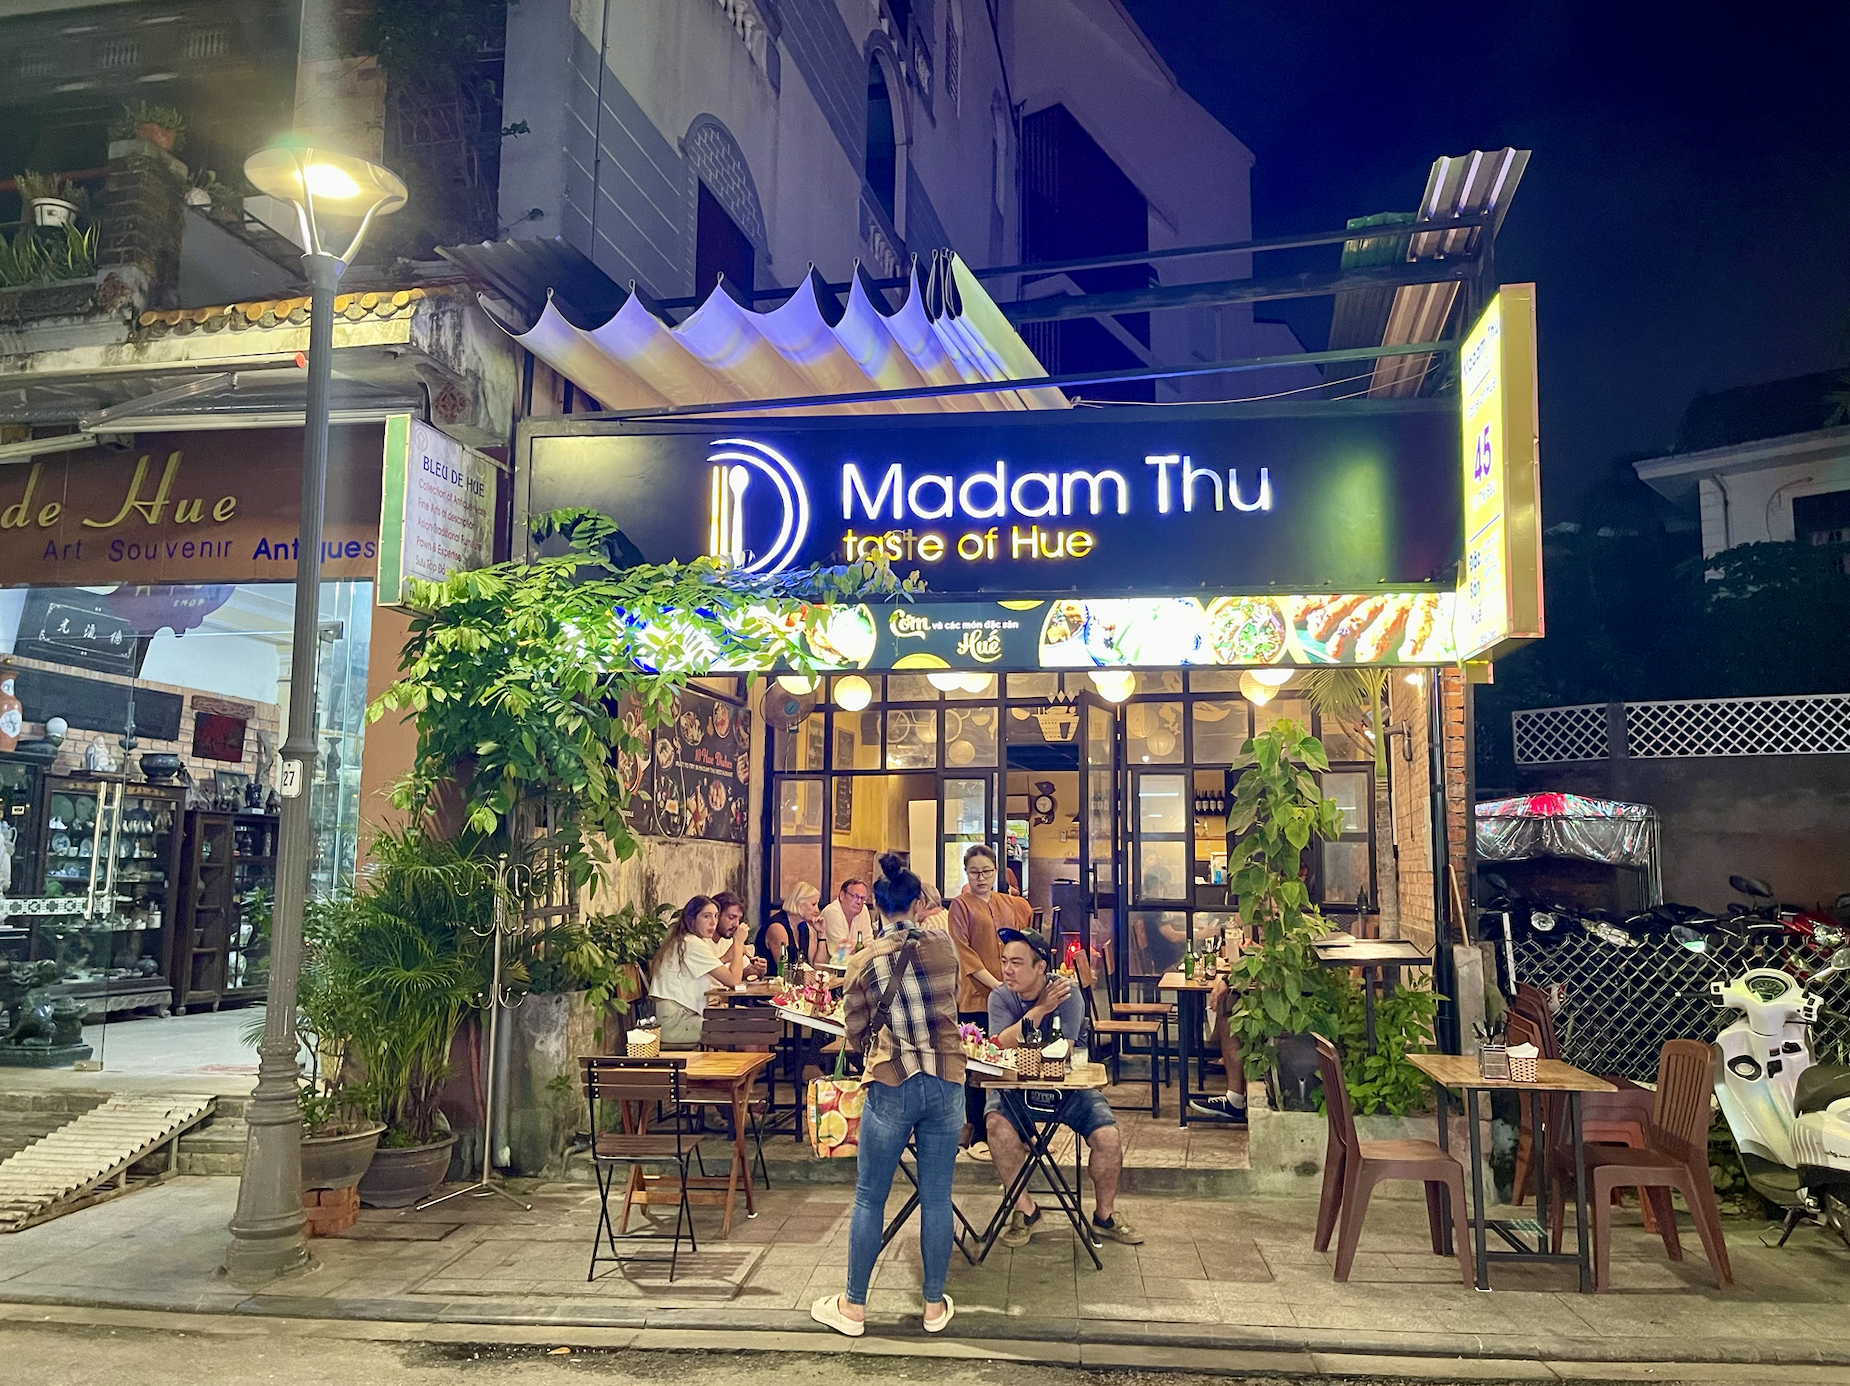 Madam Thu Restaurant, Hue, Vietnam-10-day Vietnam itinerary